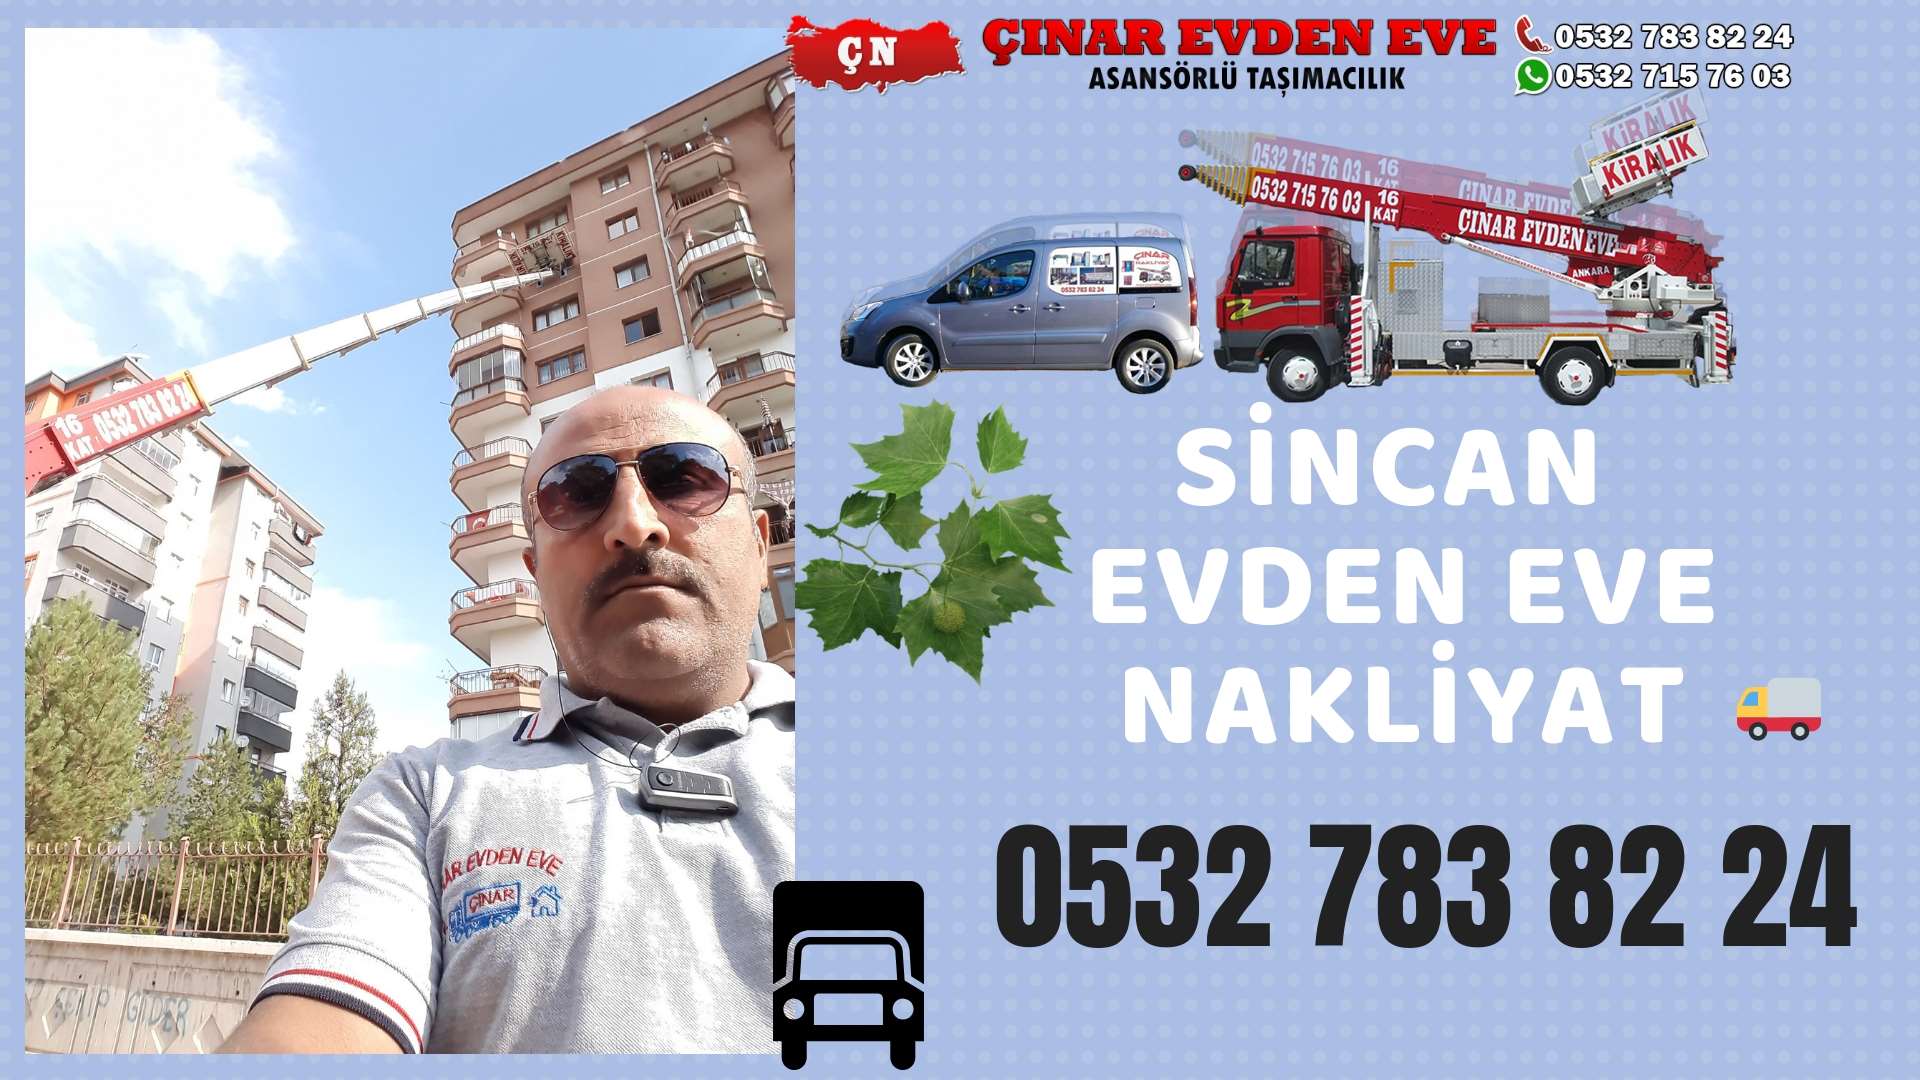 Ankara Ankara Evden Eve Nakliyat, Asansörlü Taşımacılık, Ofis / İş Yeri Taşıma 0532 715 76 03